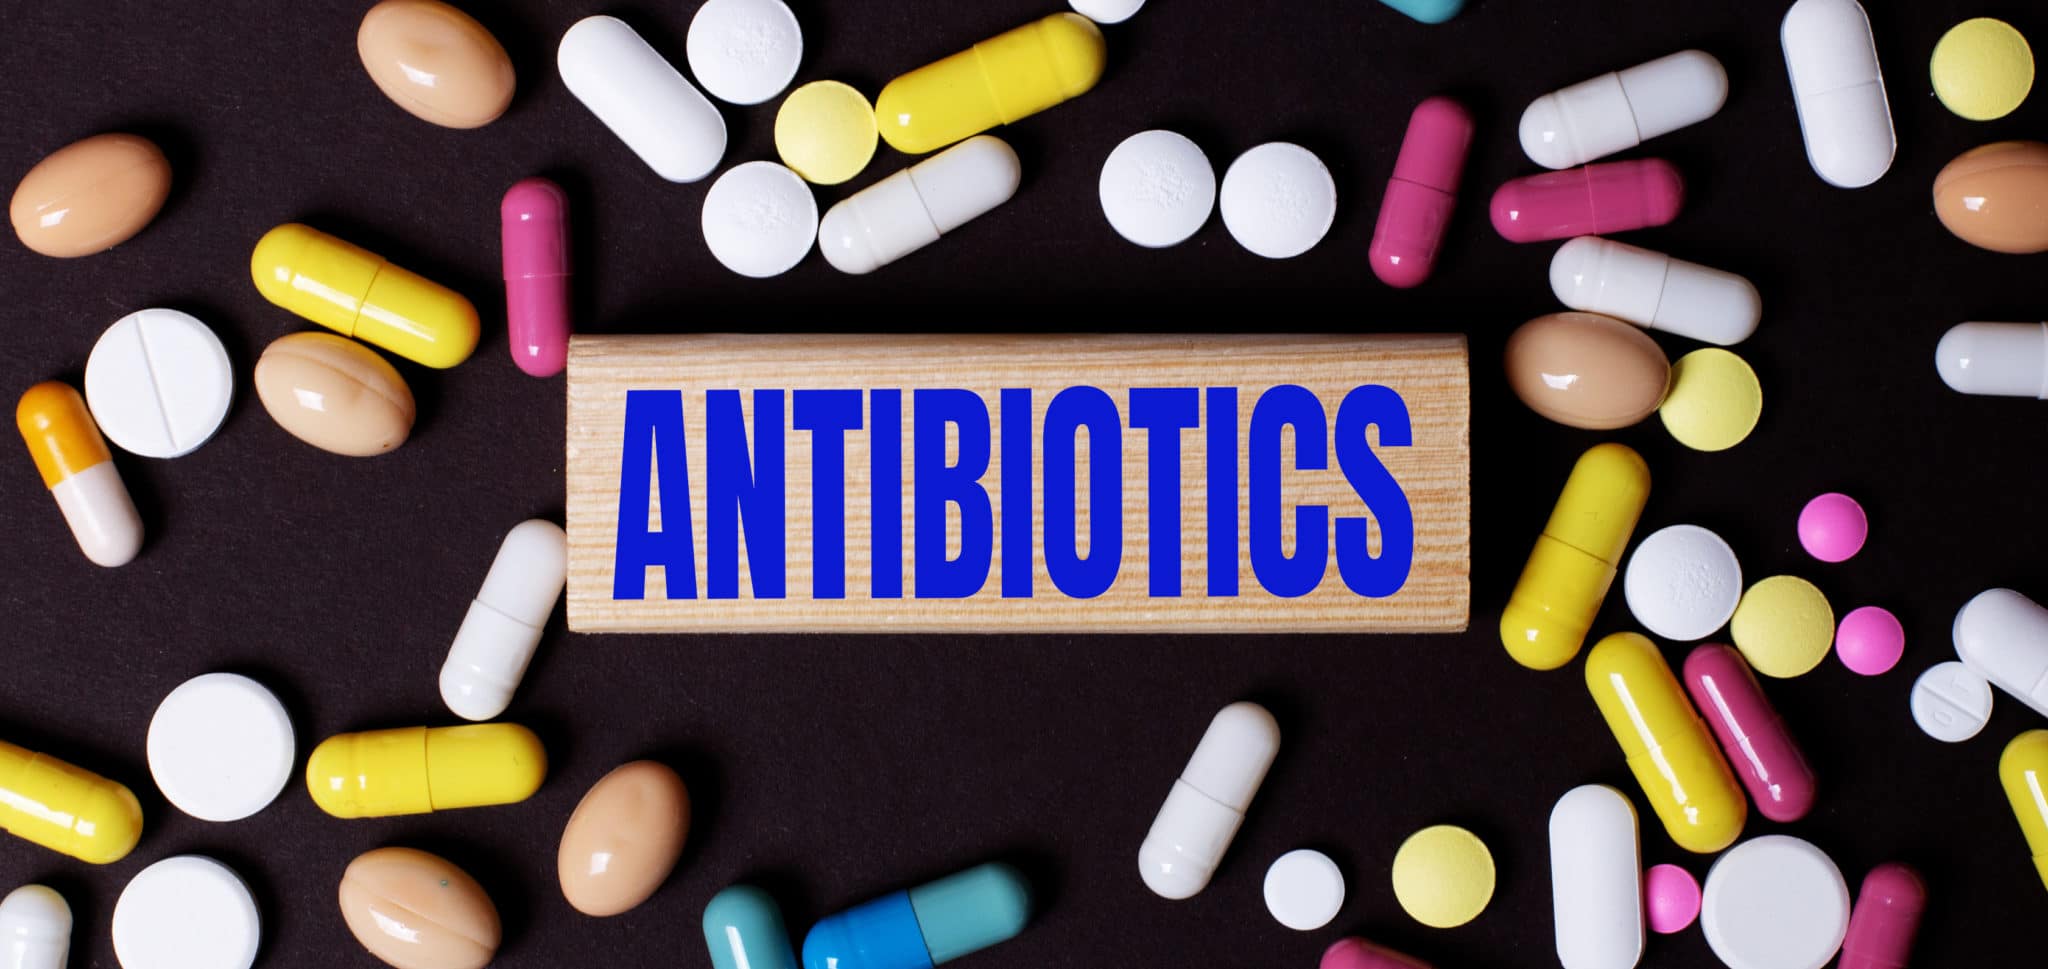 profilaktyka sbe i premedykacja antybiotykowa